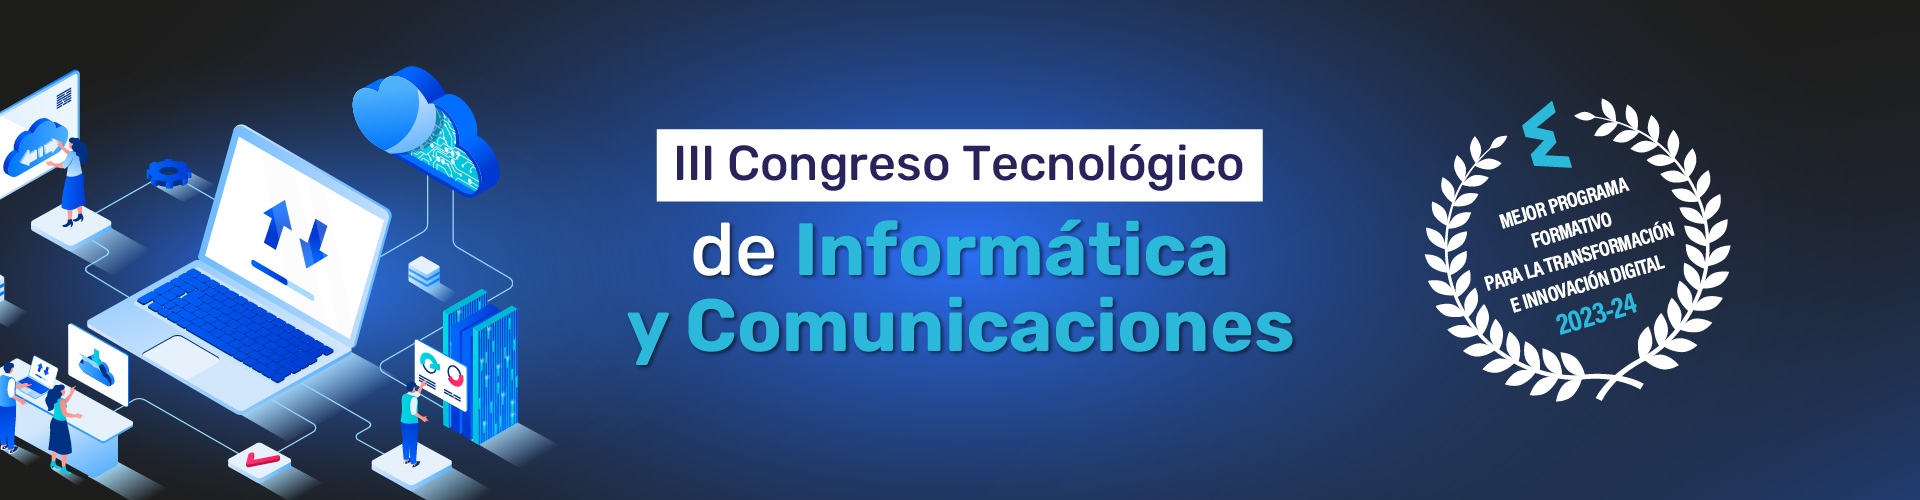 III Congreso Tecnológico de Informática y Comunicaciones MasterD